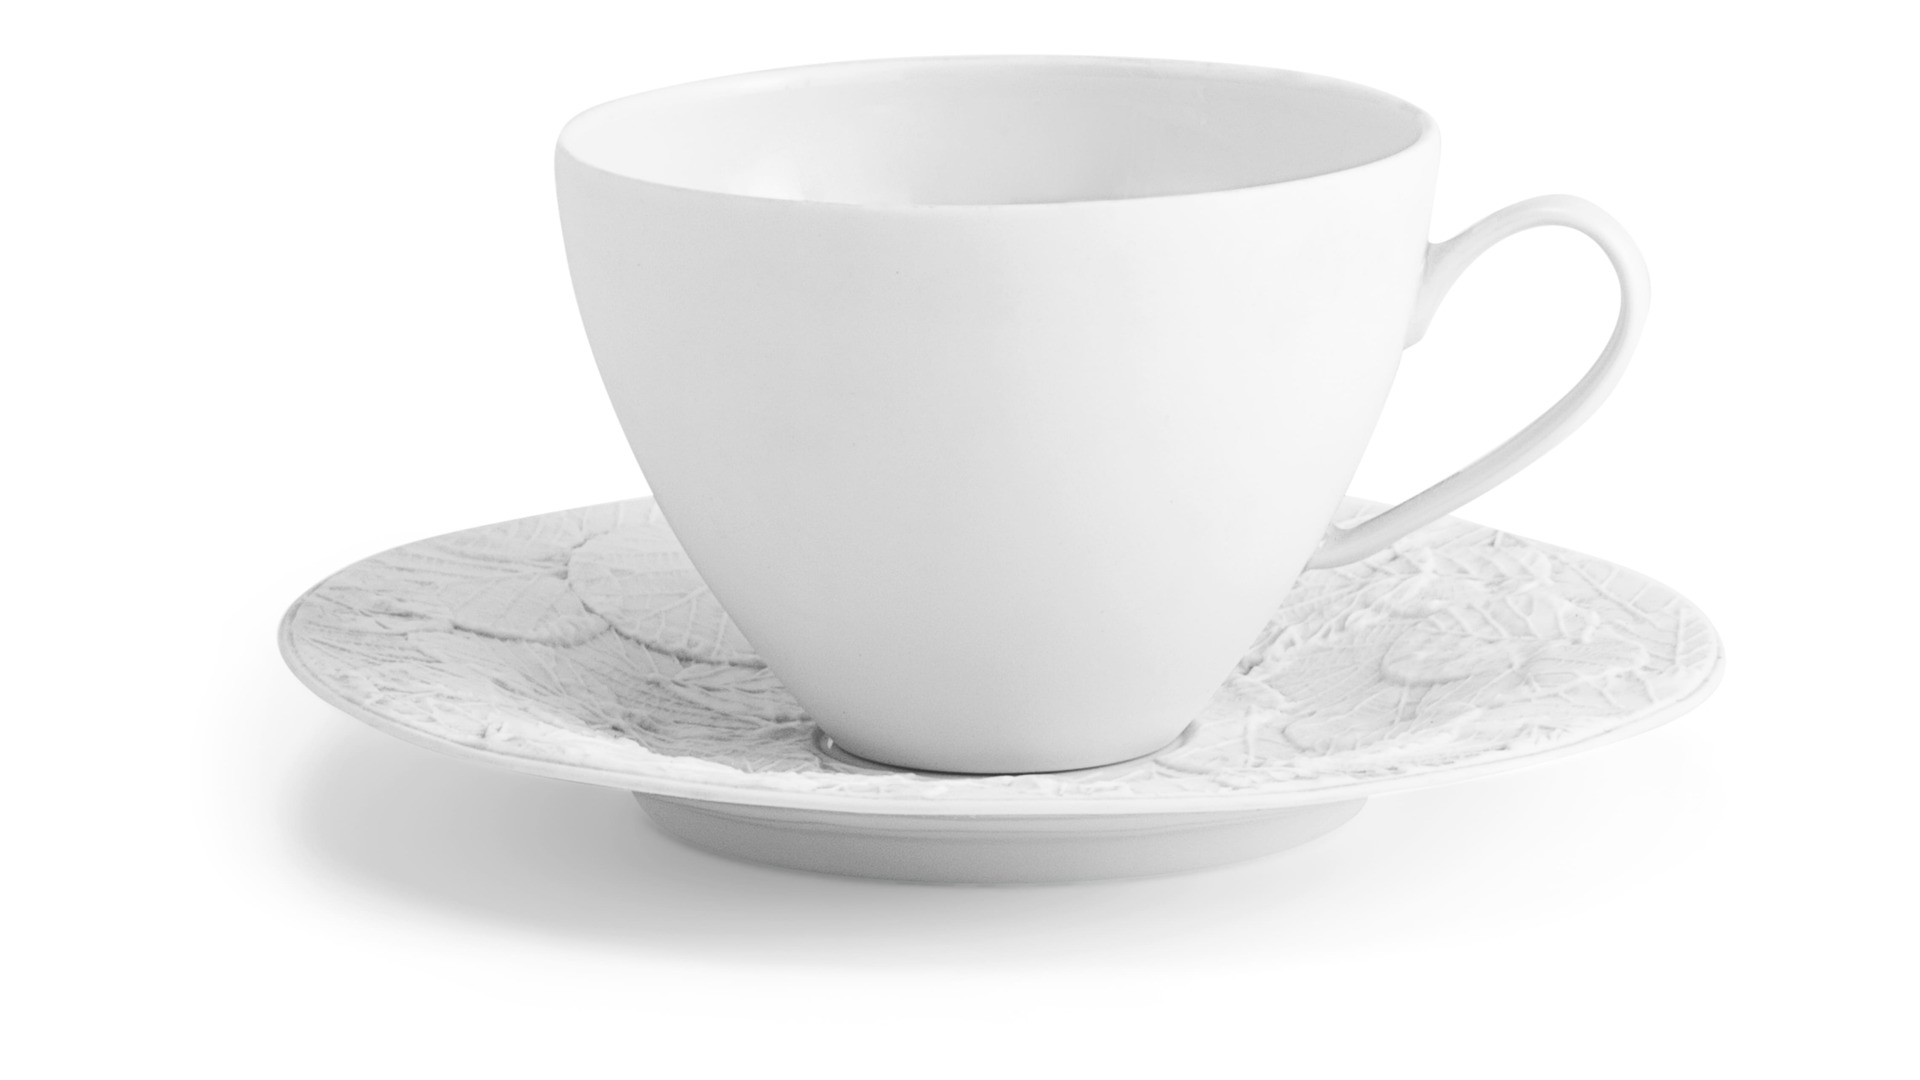 Чашка чайная  с блюдцем Michael Aram Лесные листья, фарфор